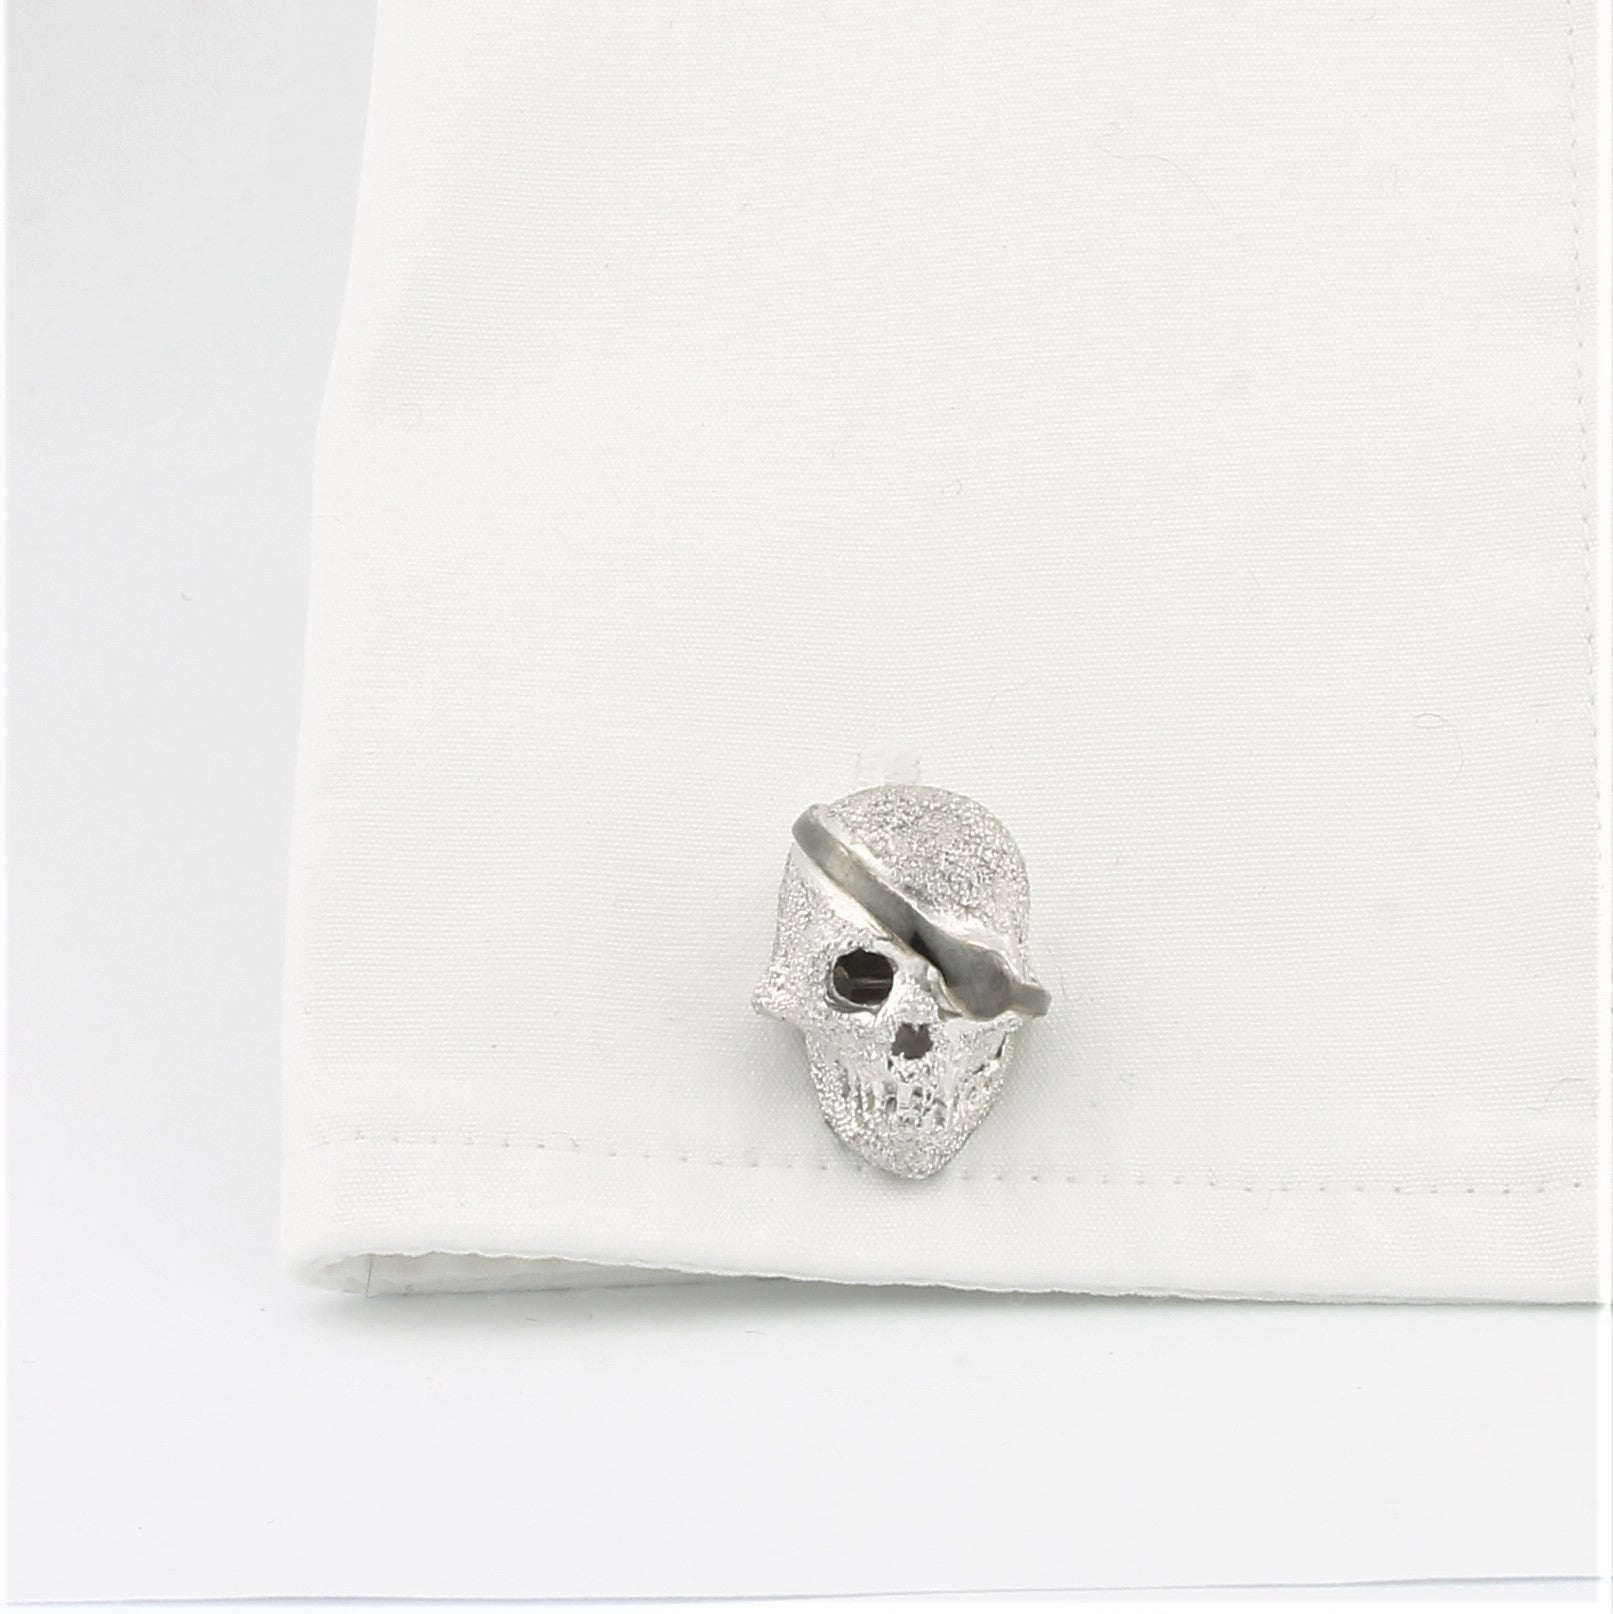 Skull cufflinks in silver in a cuff